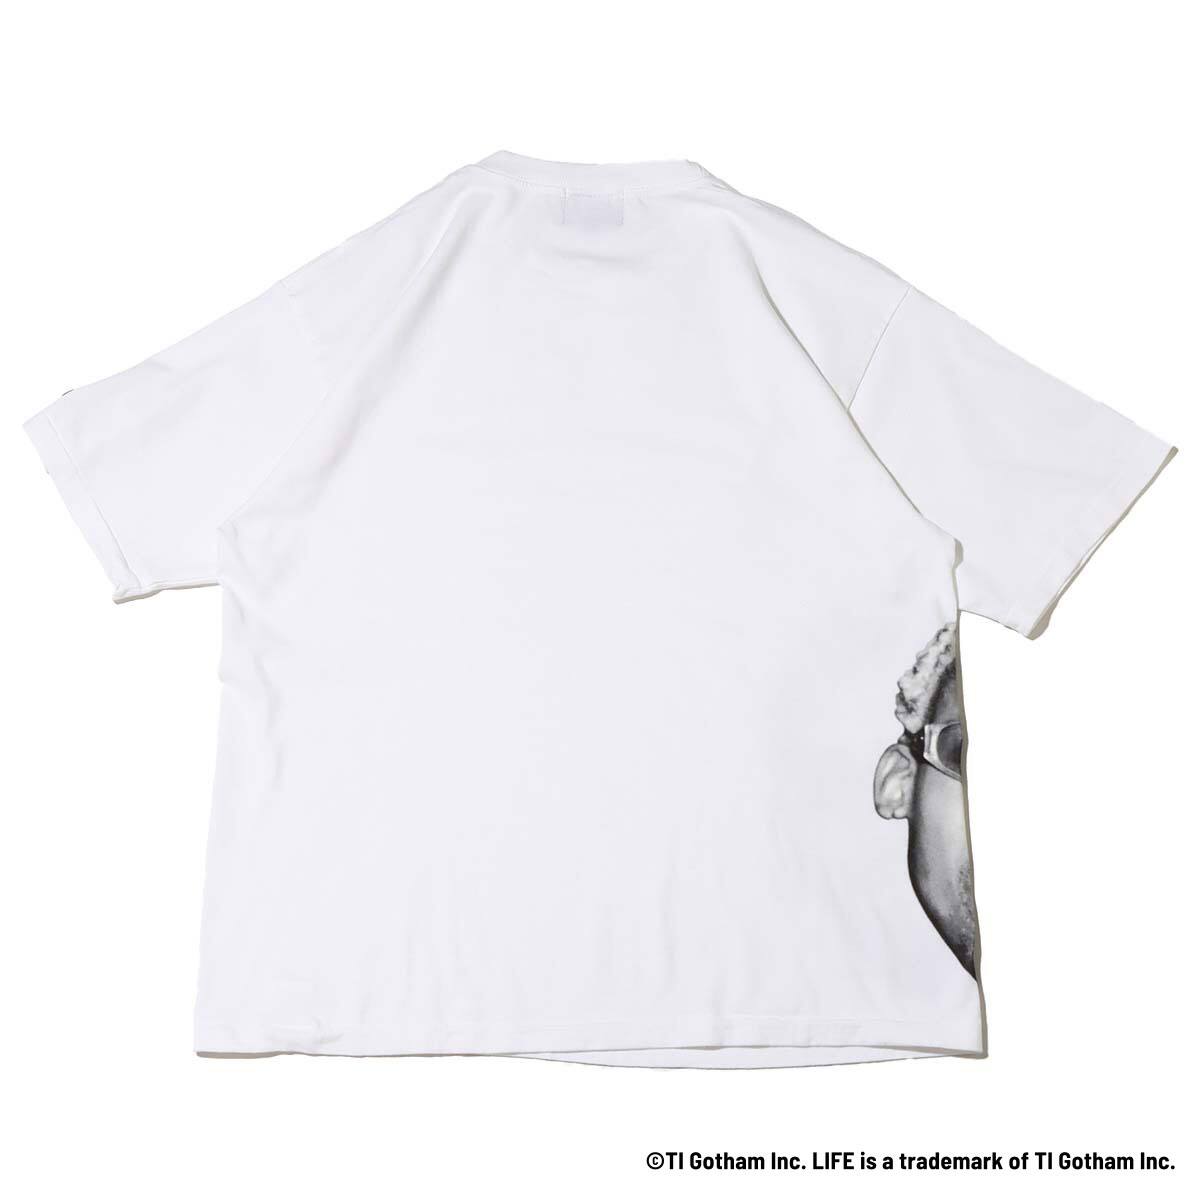 素晴らしい外見 激レア 初期デザイン WORM TOKYO カットソー tシャツ